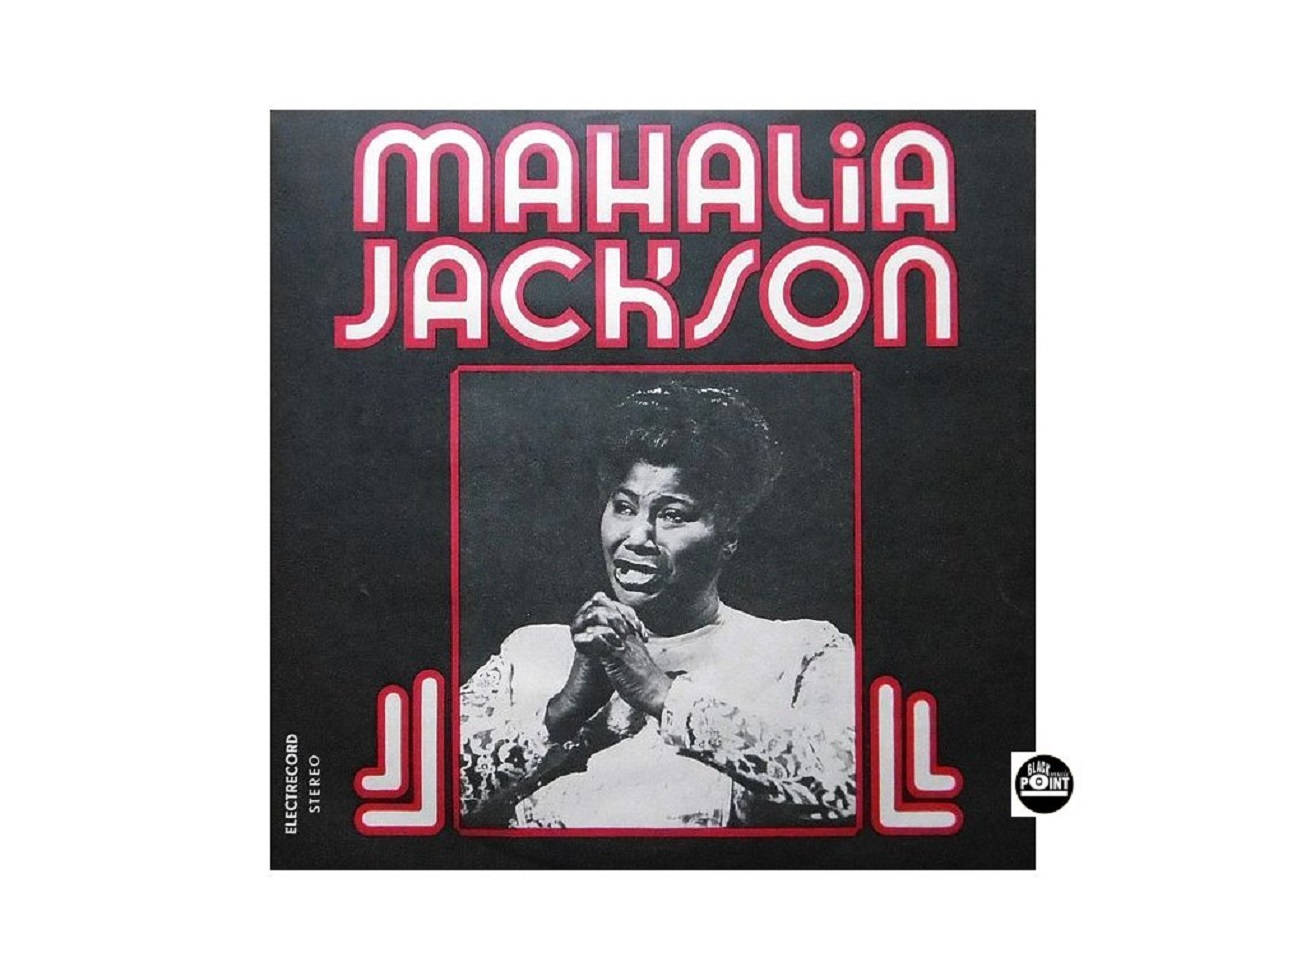 Amerikanischegospel-sängerin Mahalia Jackson 1977 Album Wallpaper